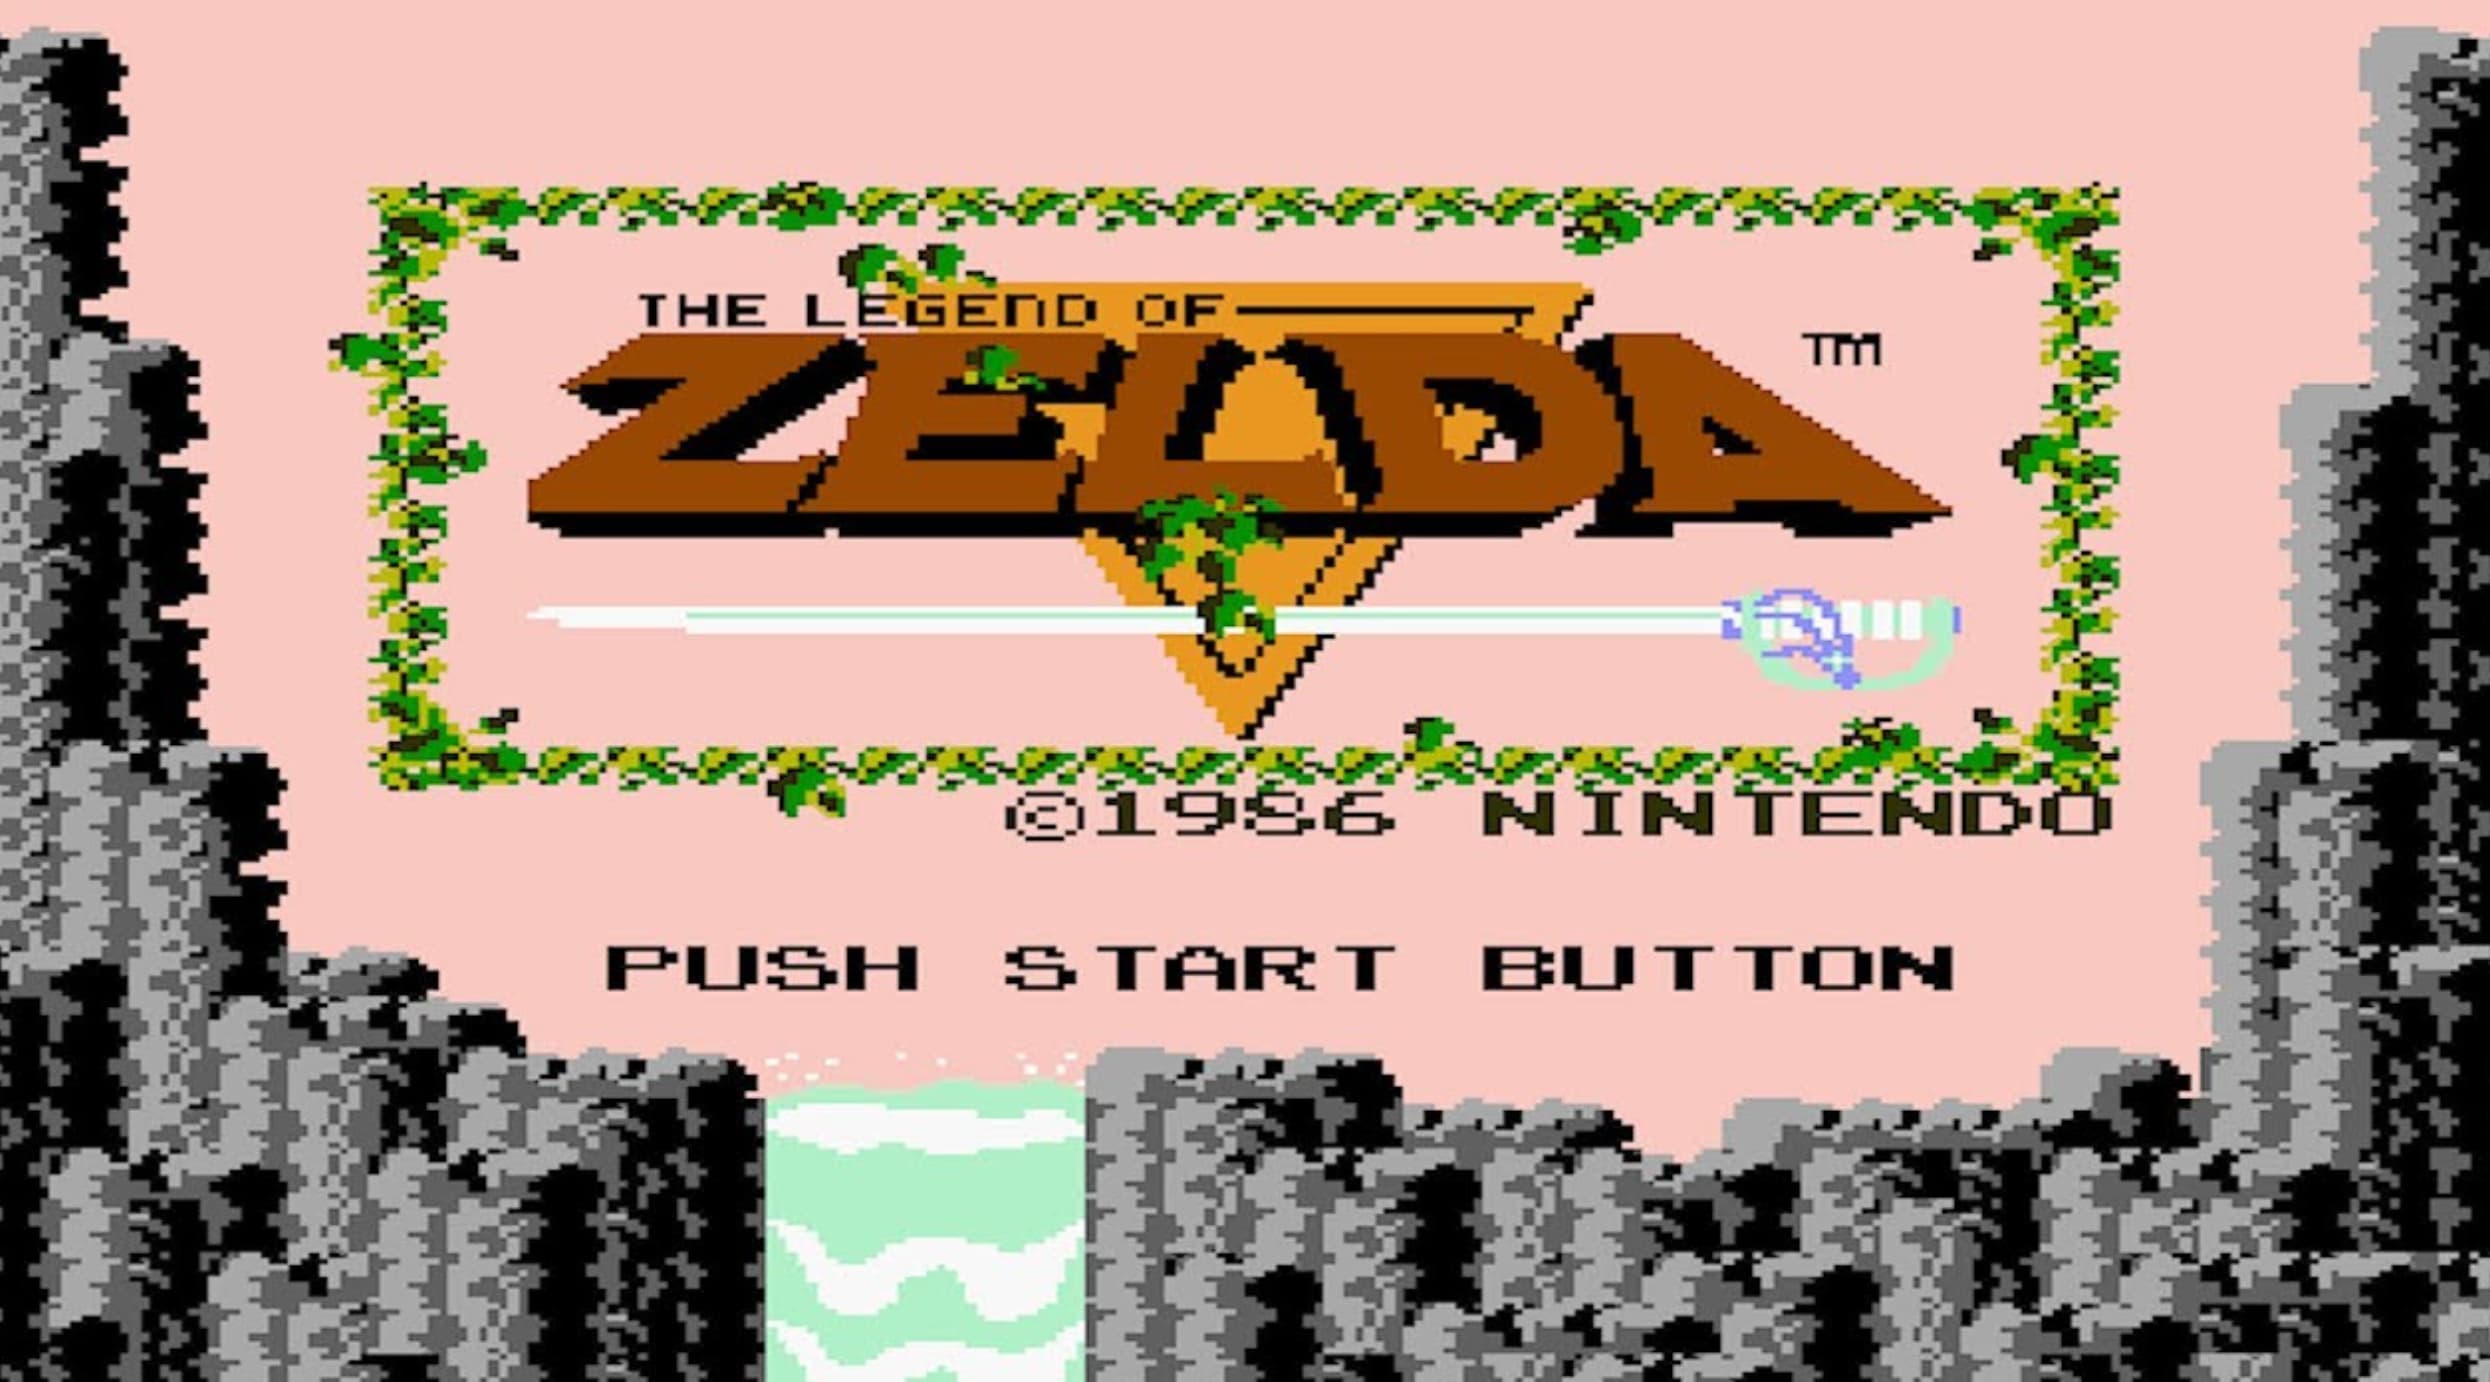 legend of zelda 86 - The Legend Of Fade 61956 Nintendo Push Start Button